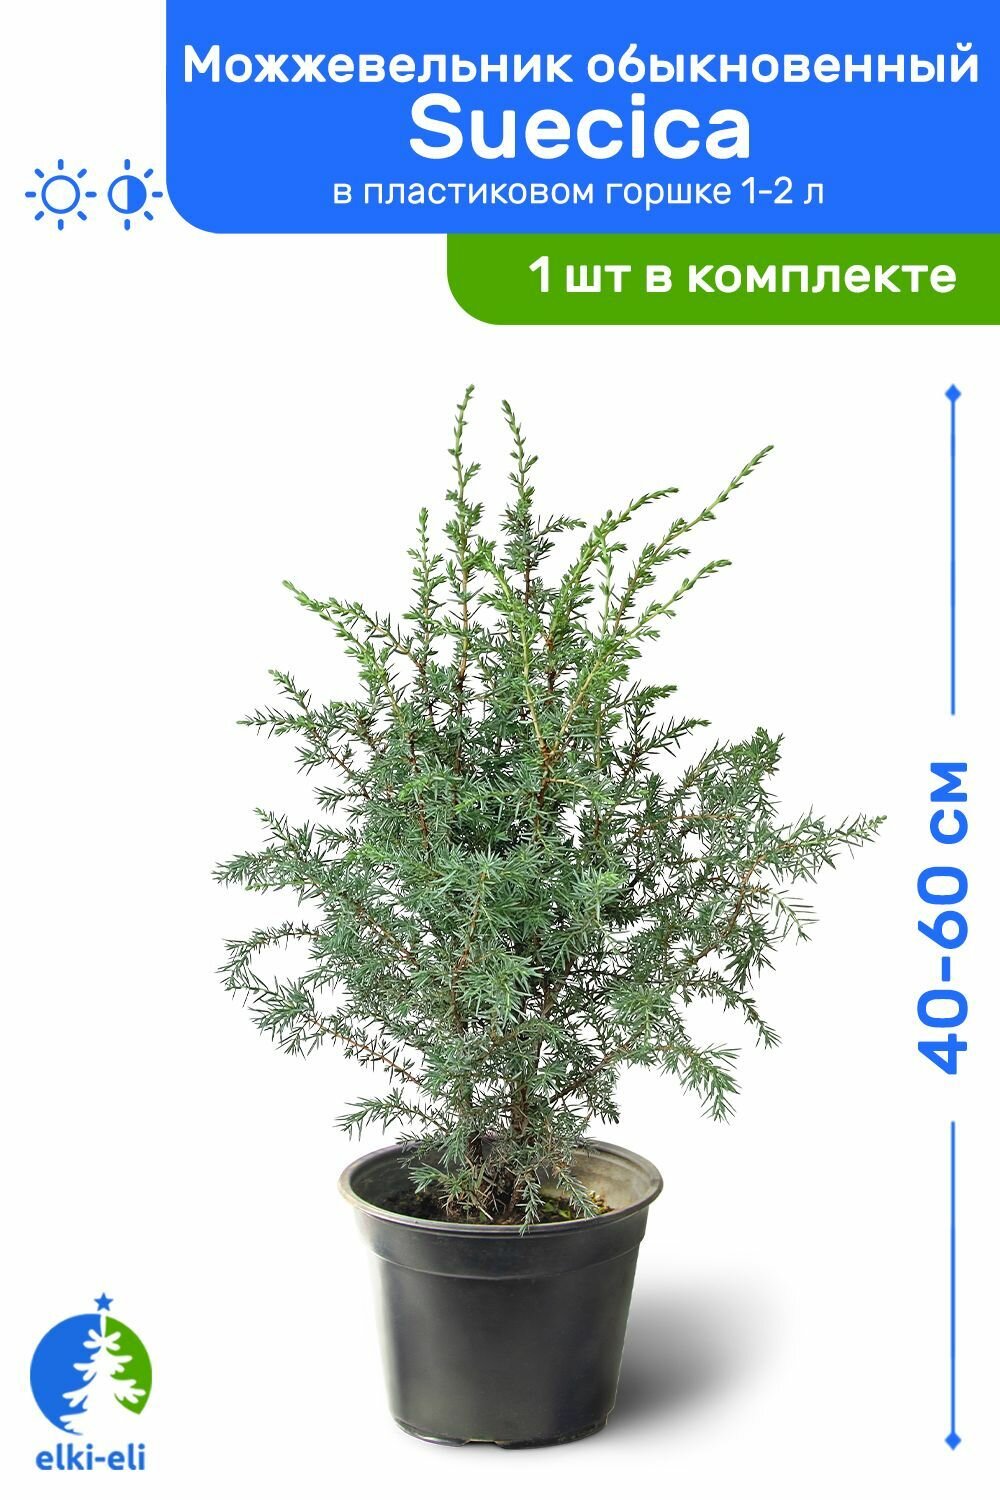 Можжевельник обыкновенный Suecica (Суецика) 40-60 см в пластиковом горшке 1-2 л, саженец, хвойное живое растение